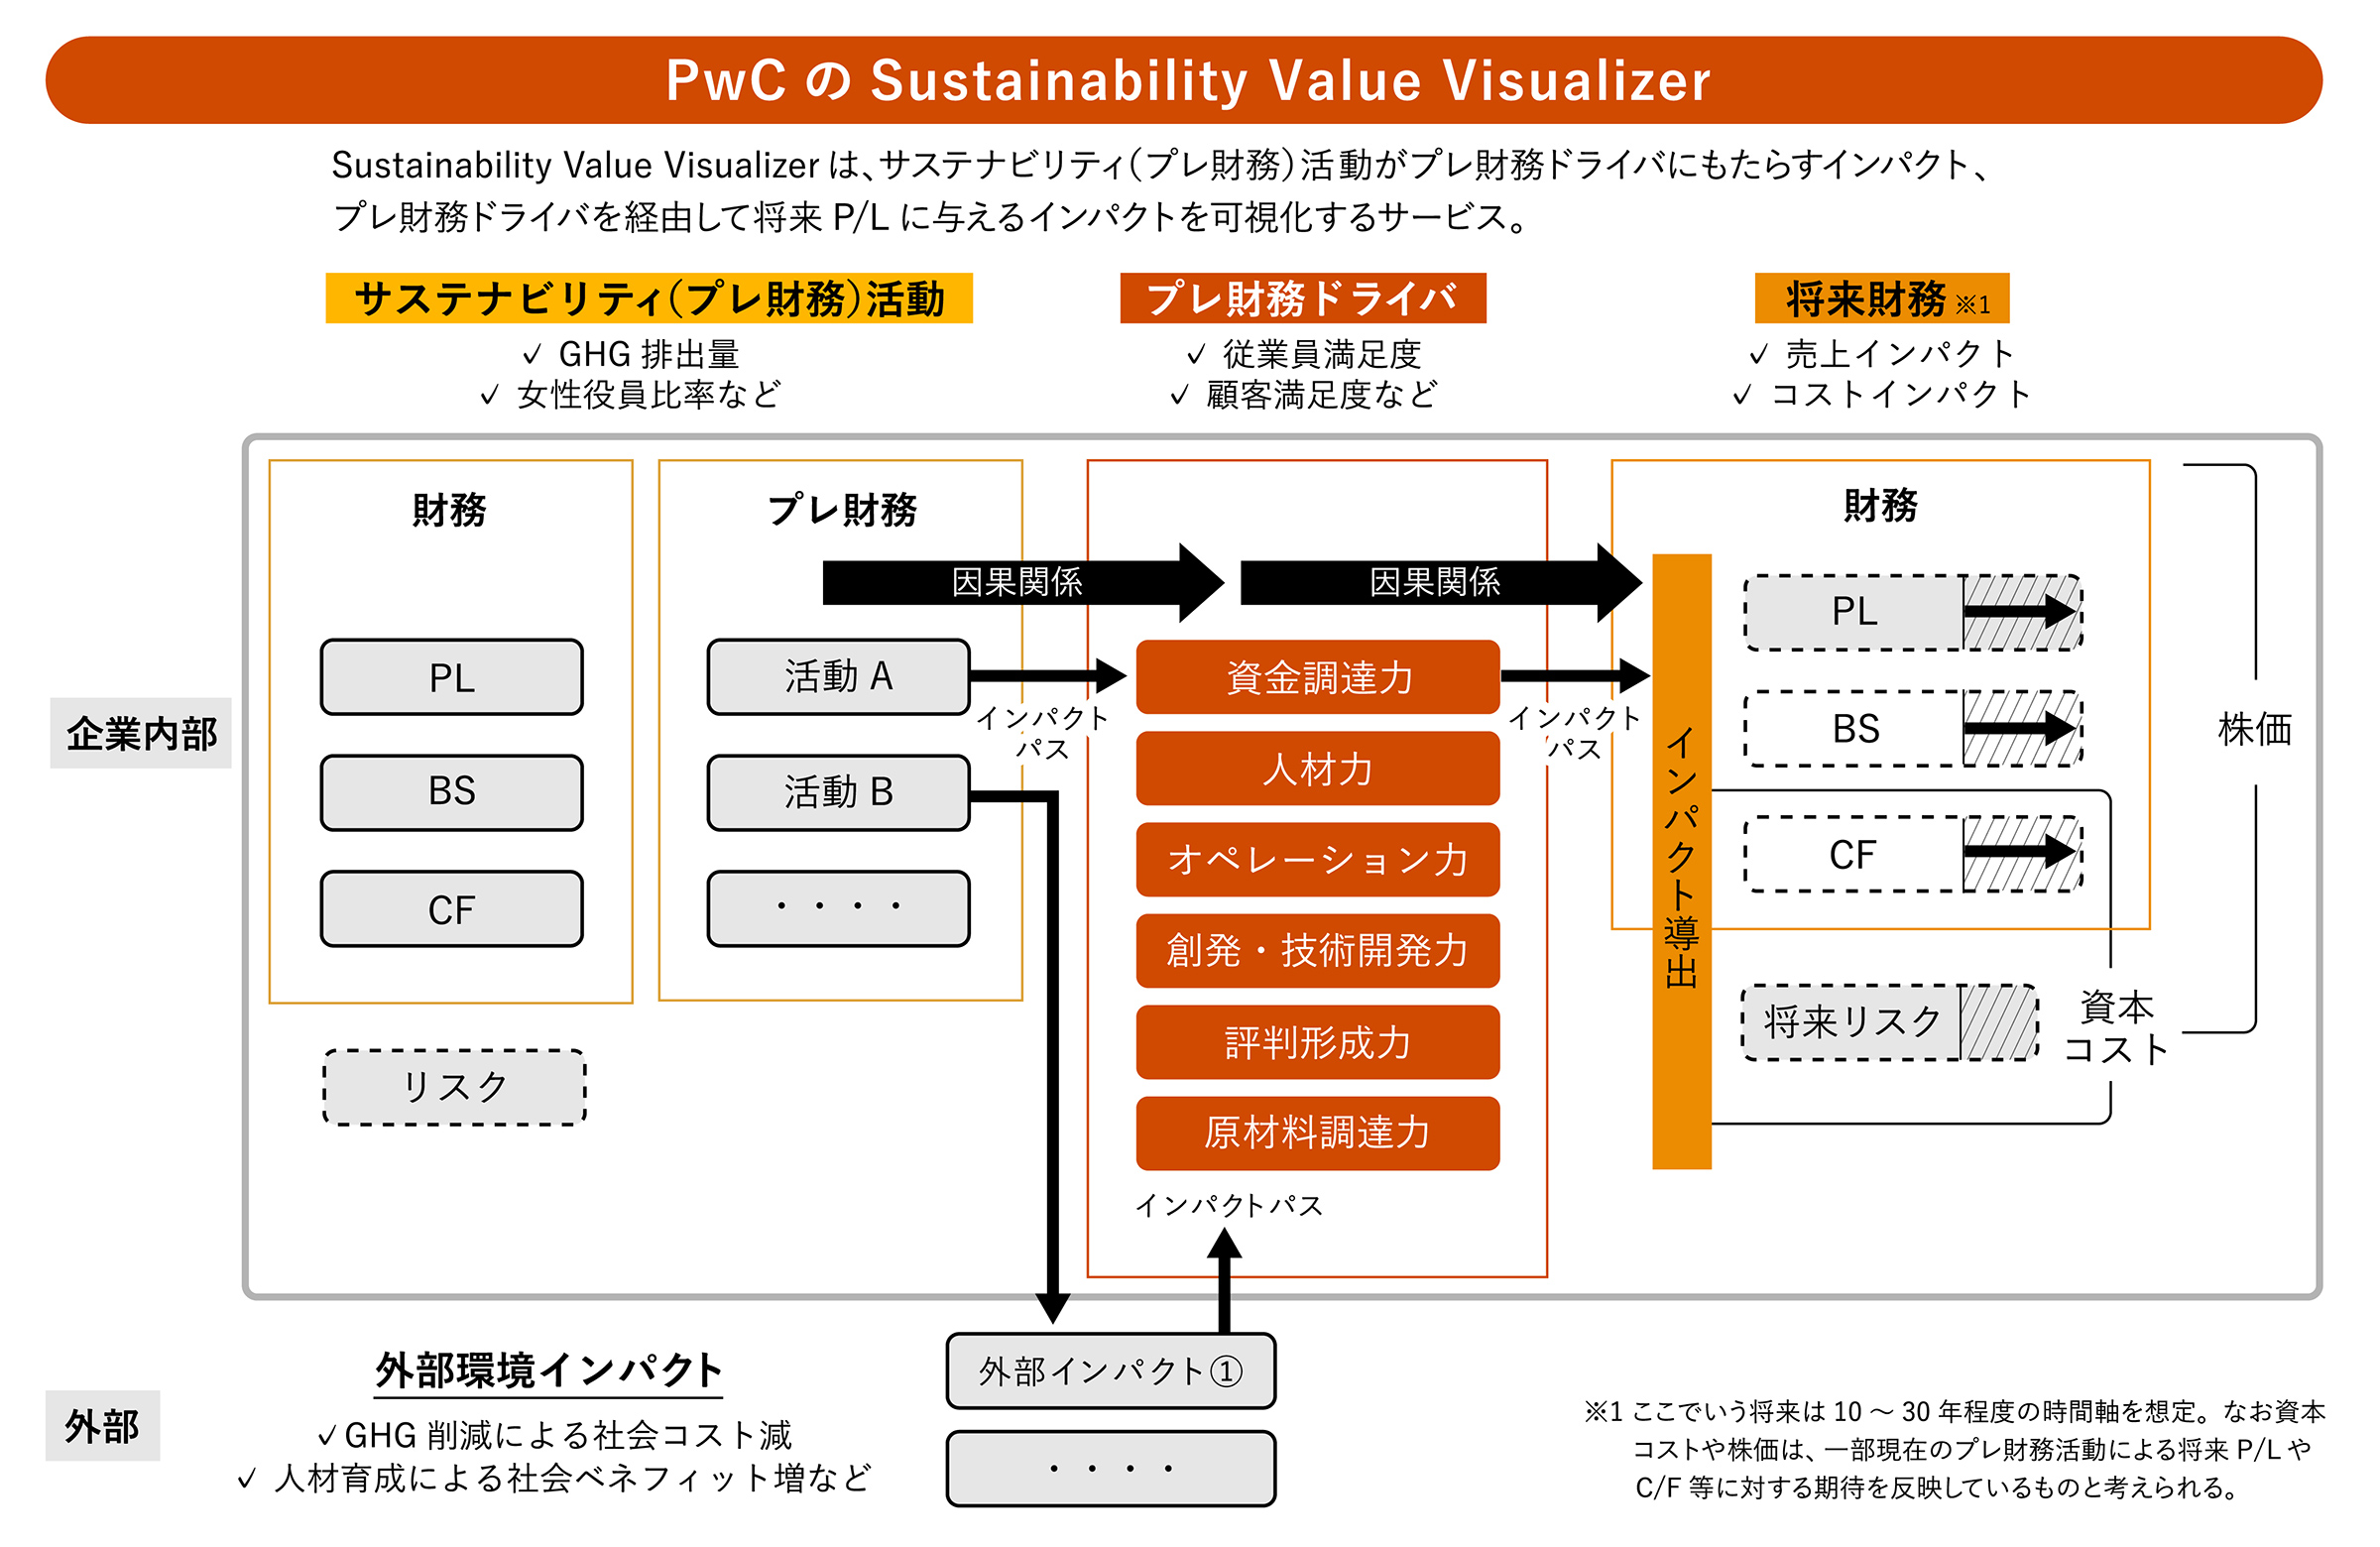 PwcのSustainability Value Visualizer(SVV)